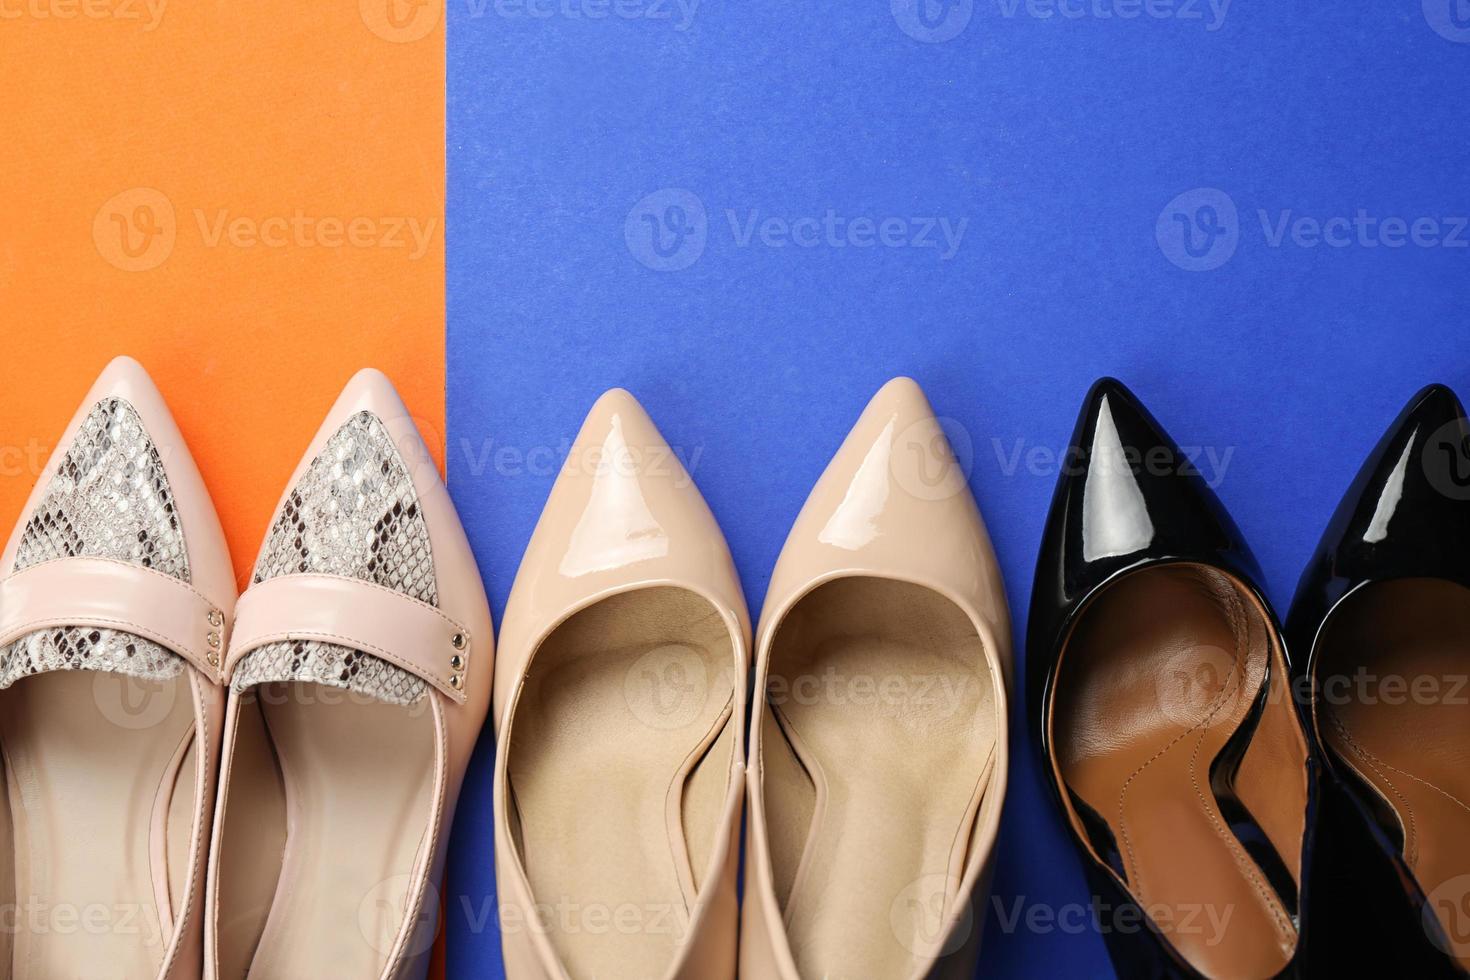 elegantes zapatos femeninos sobre fondo de color foto